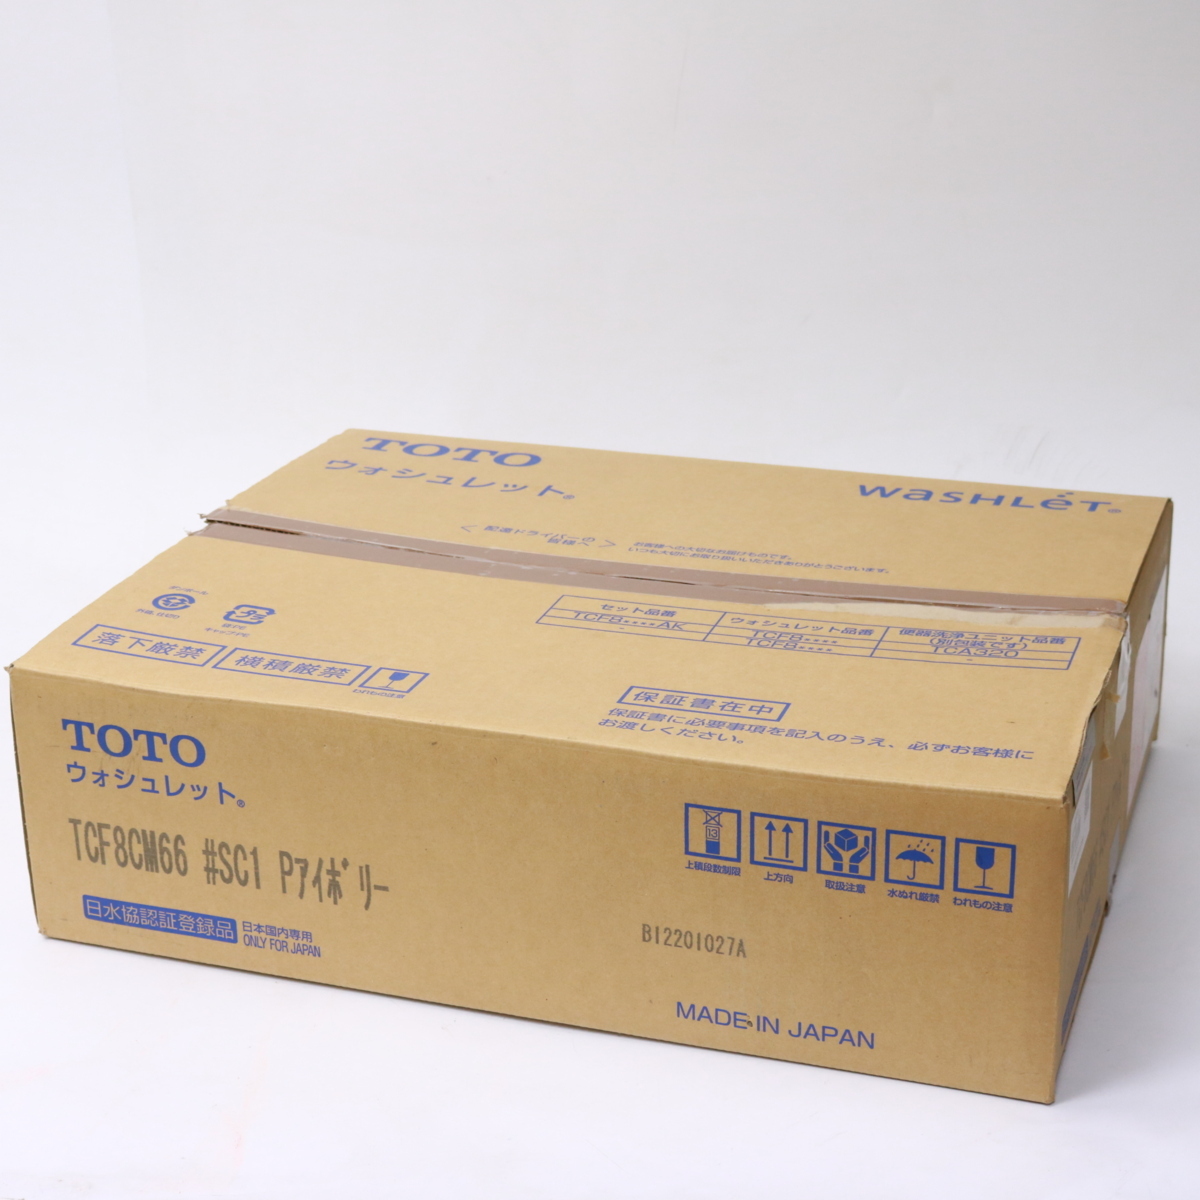 東京都三鷹市にて TOTO 温水洗浄便座 TCF8CM66#SC1  を出張買取させて頂きました。